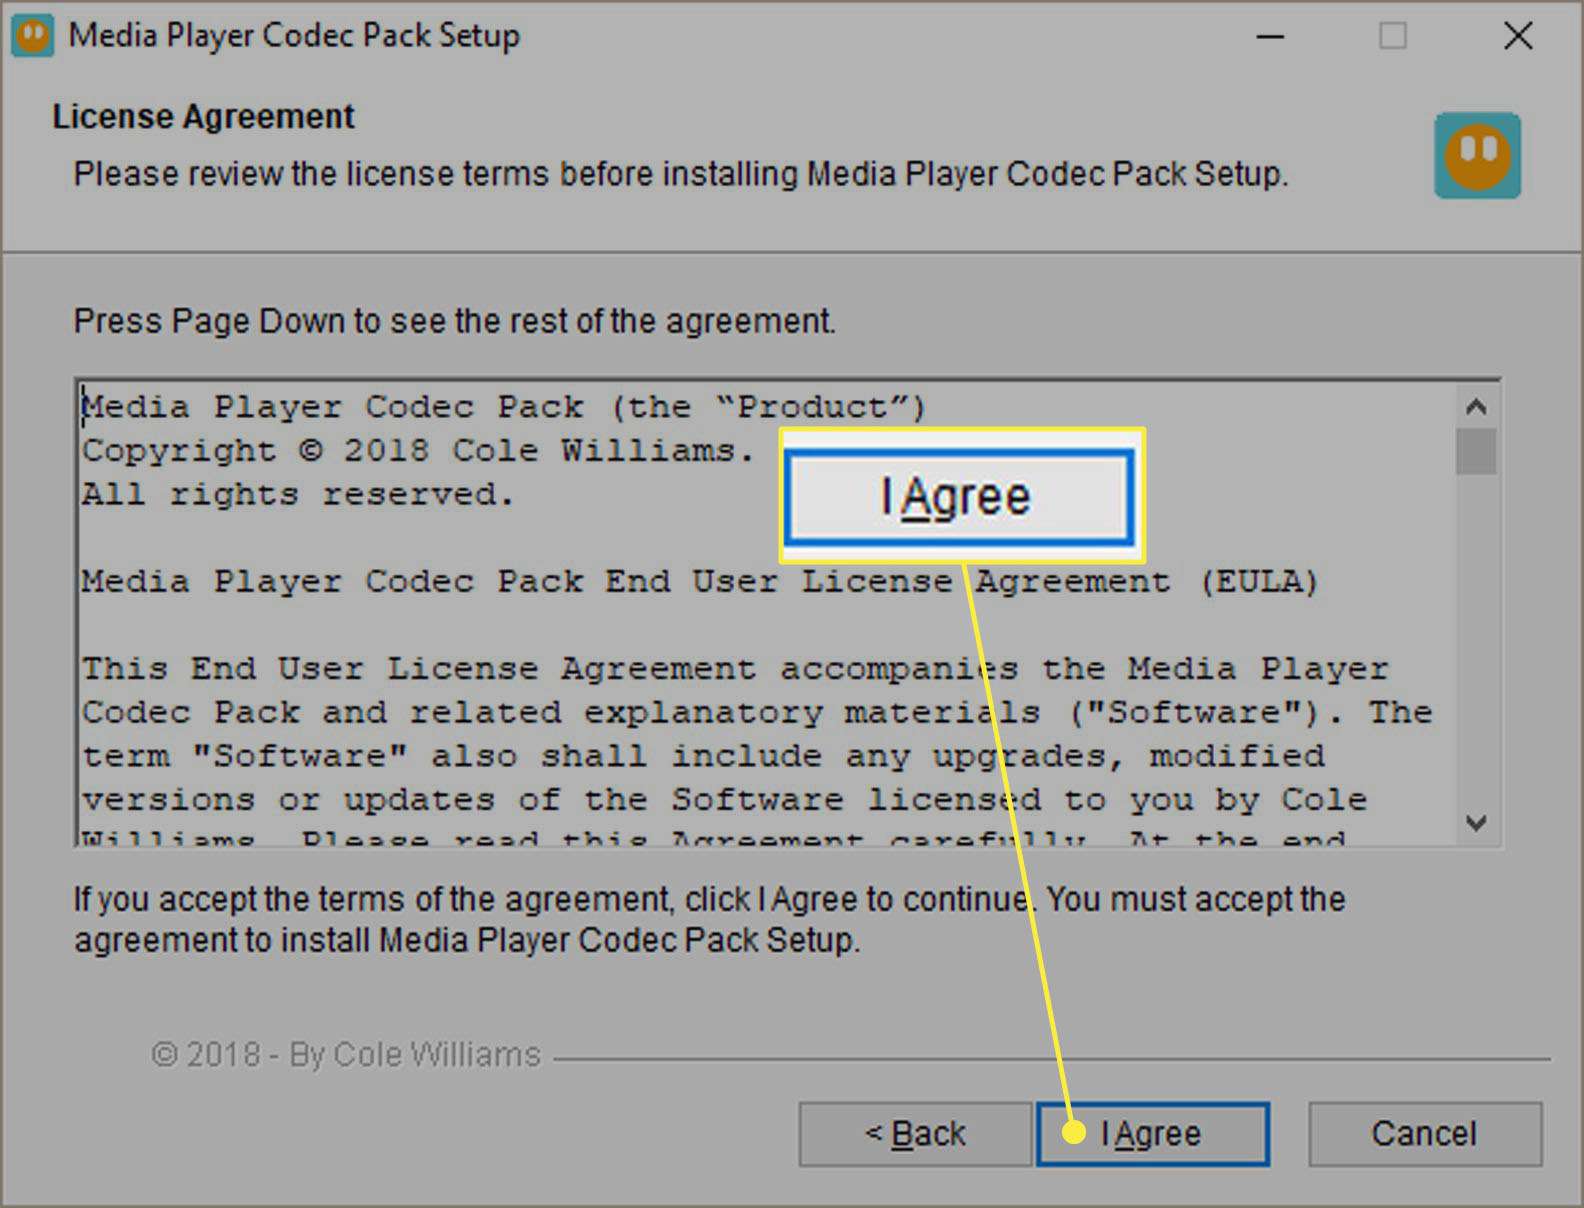 Tela de configuração do Media Player Codec Pack - Contrato de licença